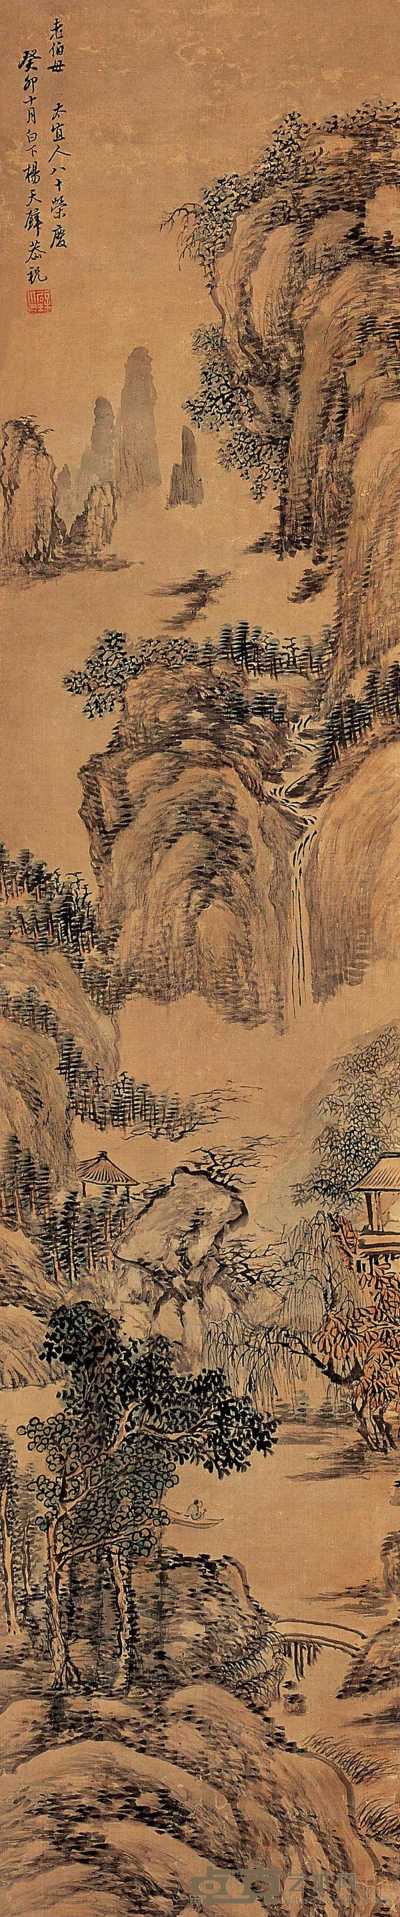 杨天壁 癸卯（1843年）作 山水 立轴 135.5×28.5cm